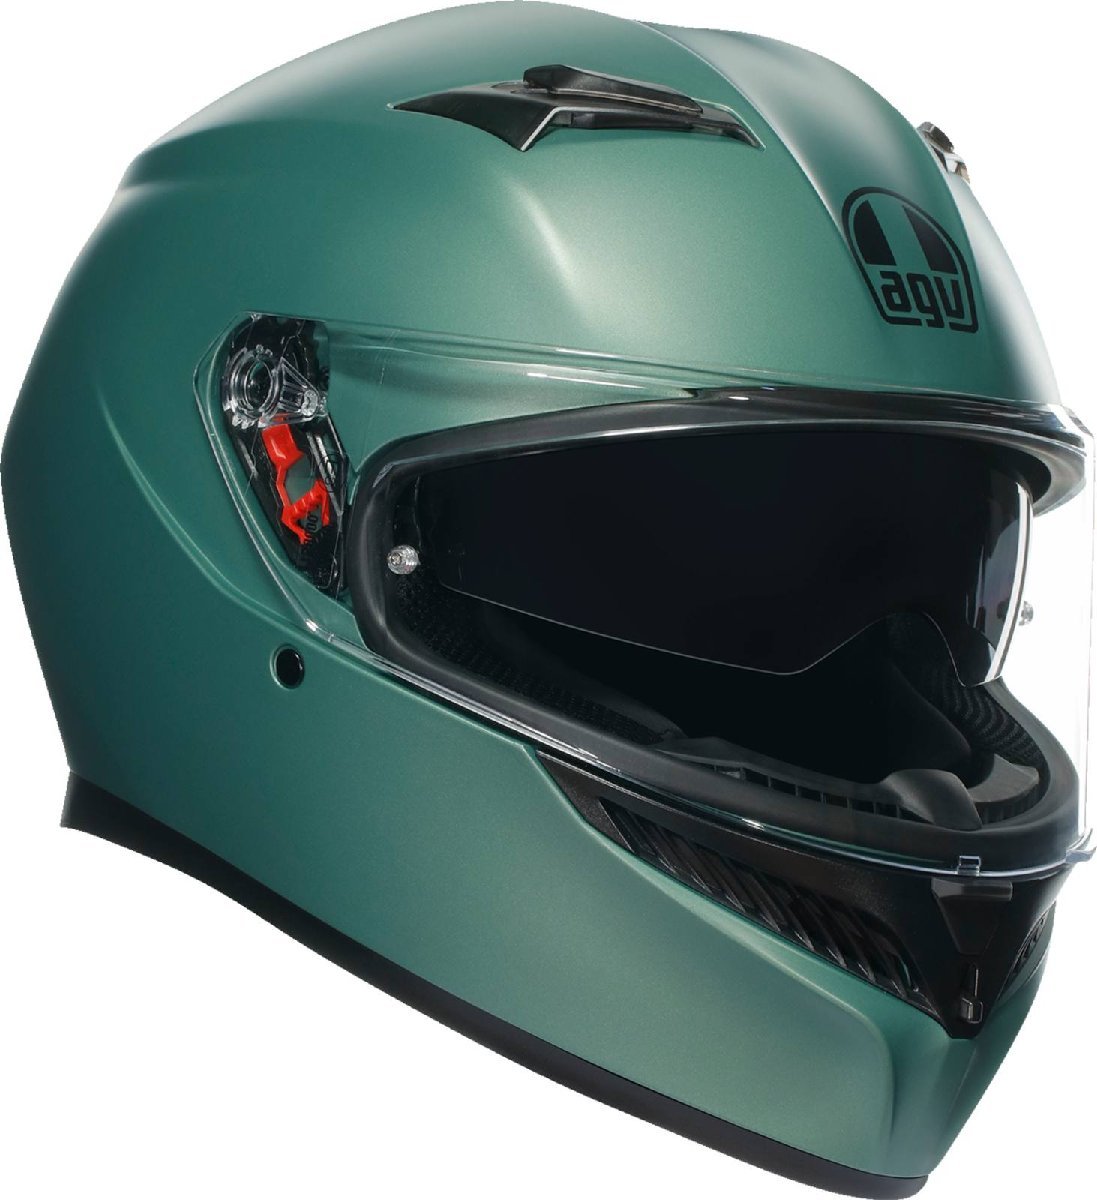 XLサイズ - マットサルヴィアグリーン - AGV K3 モノ ヘルメット